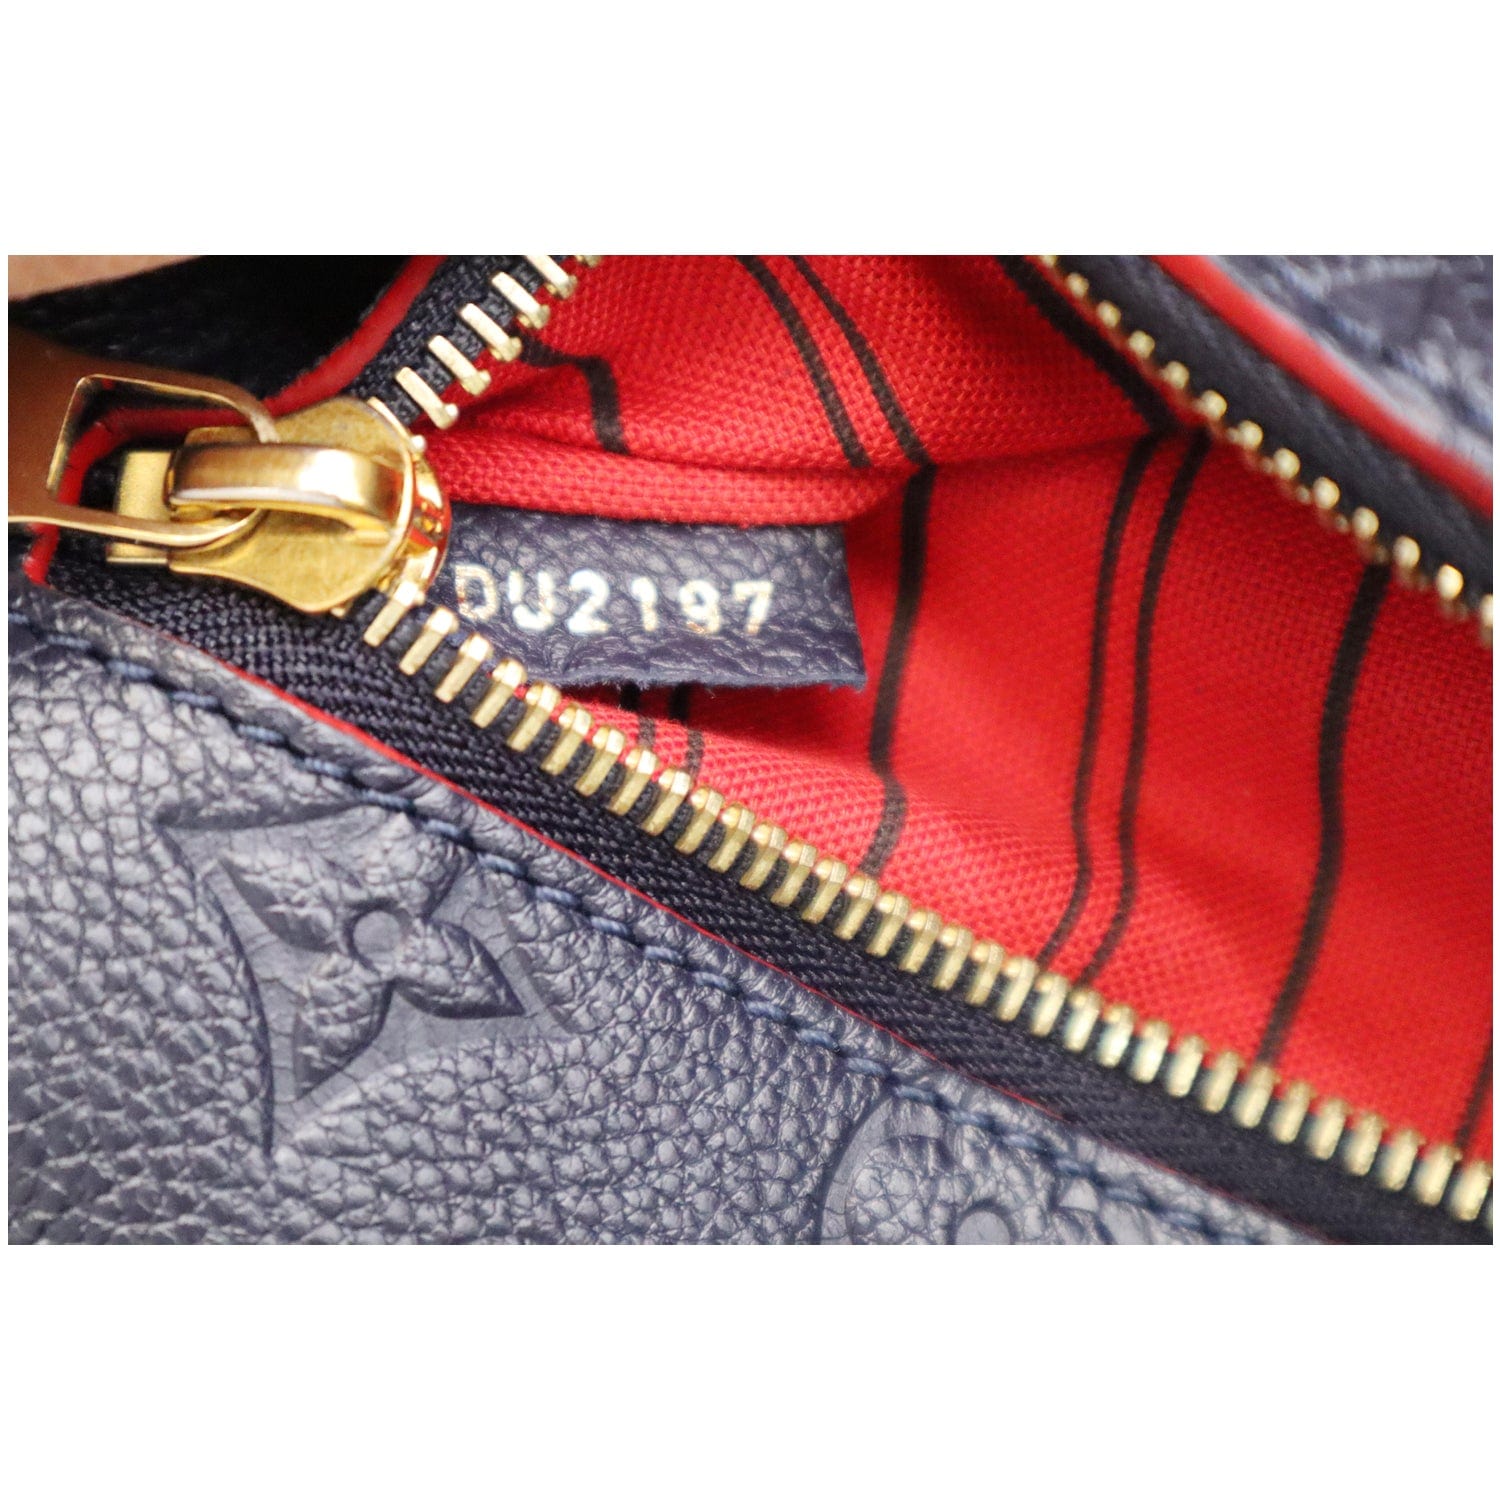 Authentic Louis Vuitton Speedy 25 Bandouliere Empreinte Marine Rouge